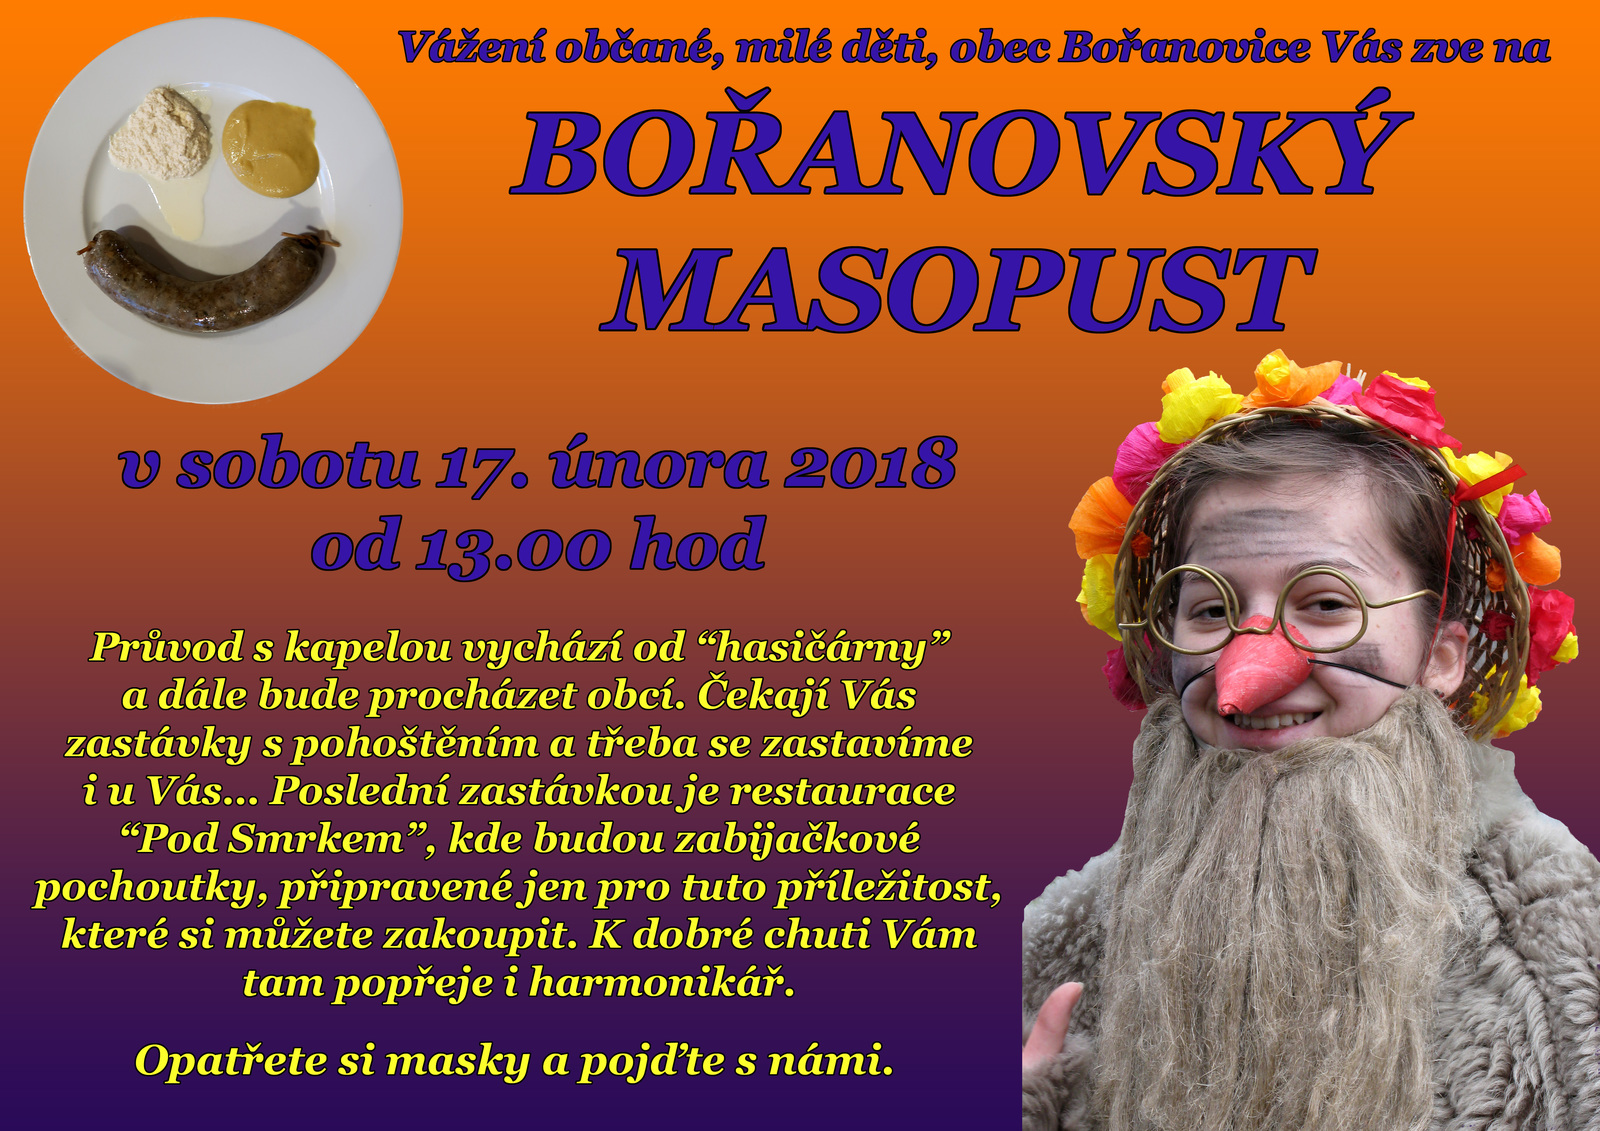 Plakát - Bořanovský Masopust 2018.jpg